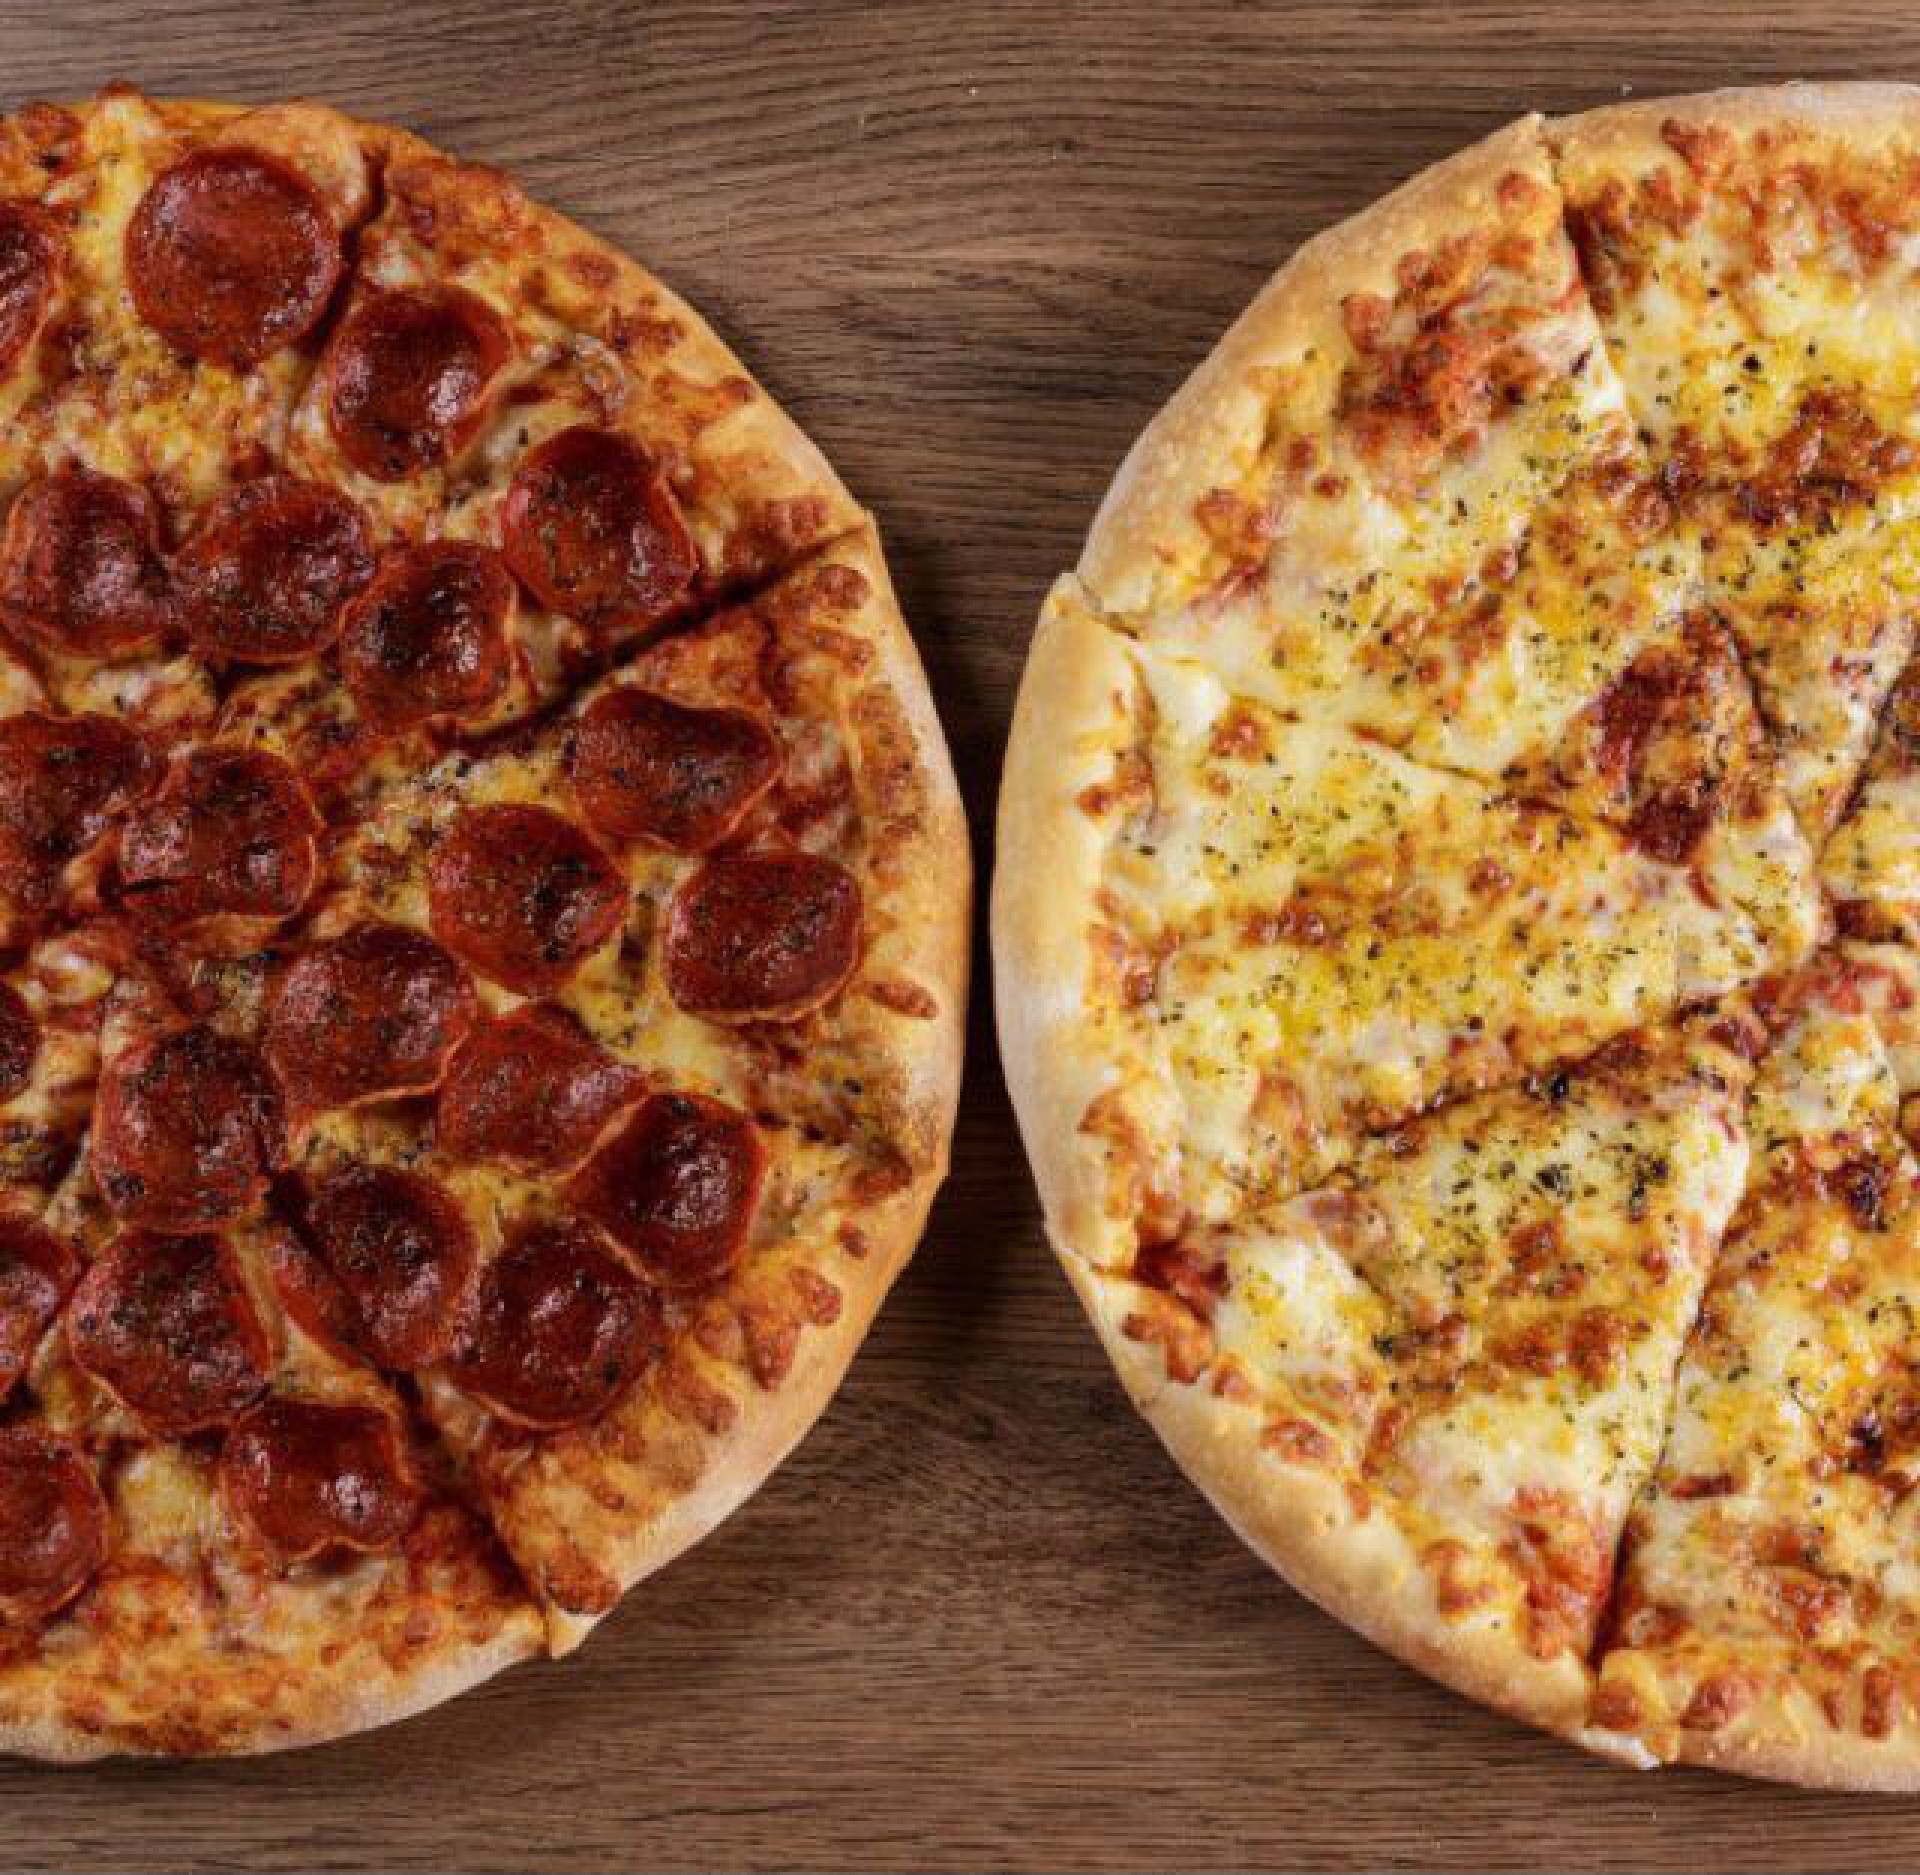 A Domino’s Pizza – maior rede de pizzas do mundo – está investindo R$ 4,8 milhões em Fortaleza, em 6 novas lojas próprias (Foto: DIVULGAÇÃO)